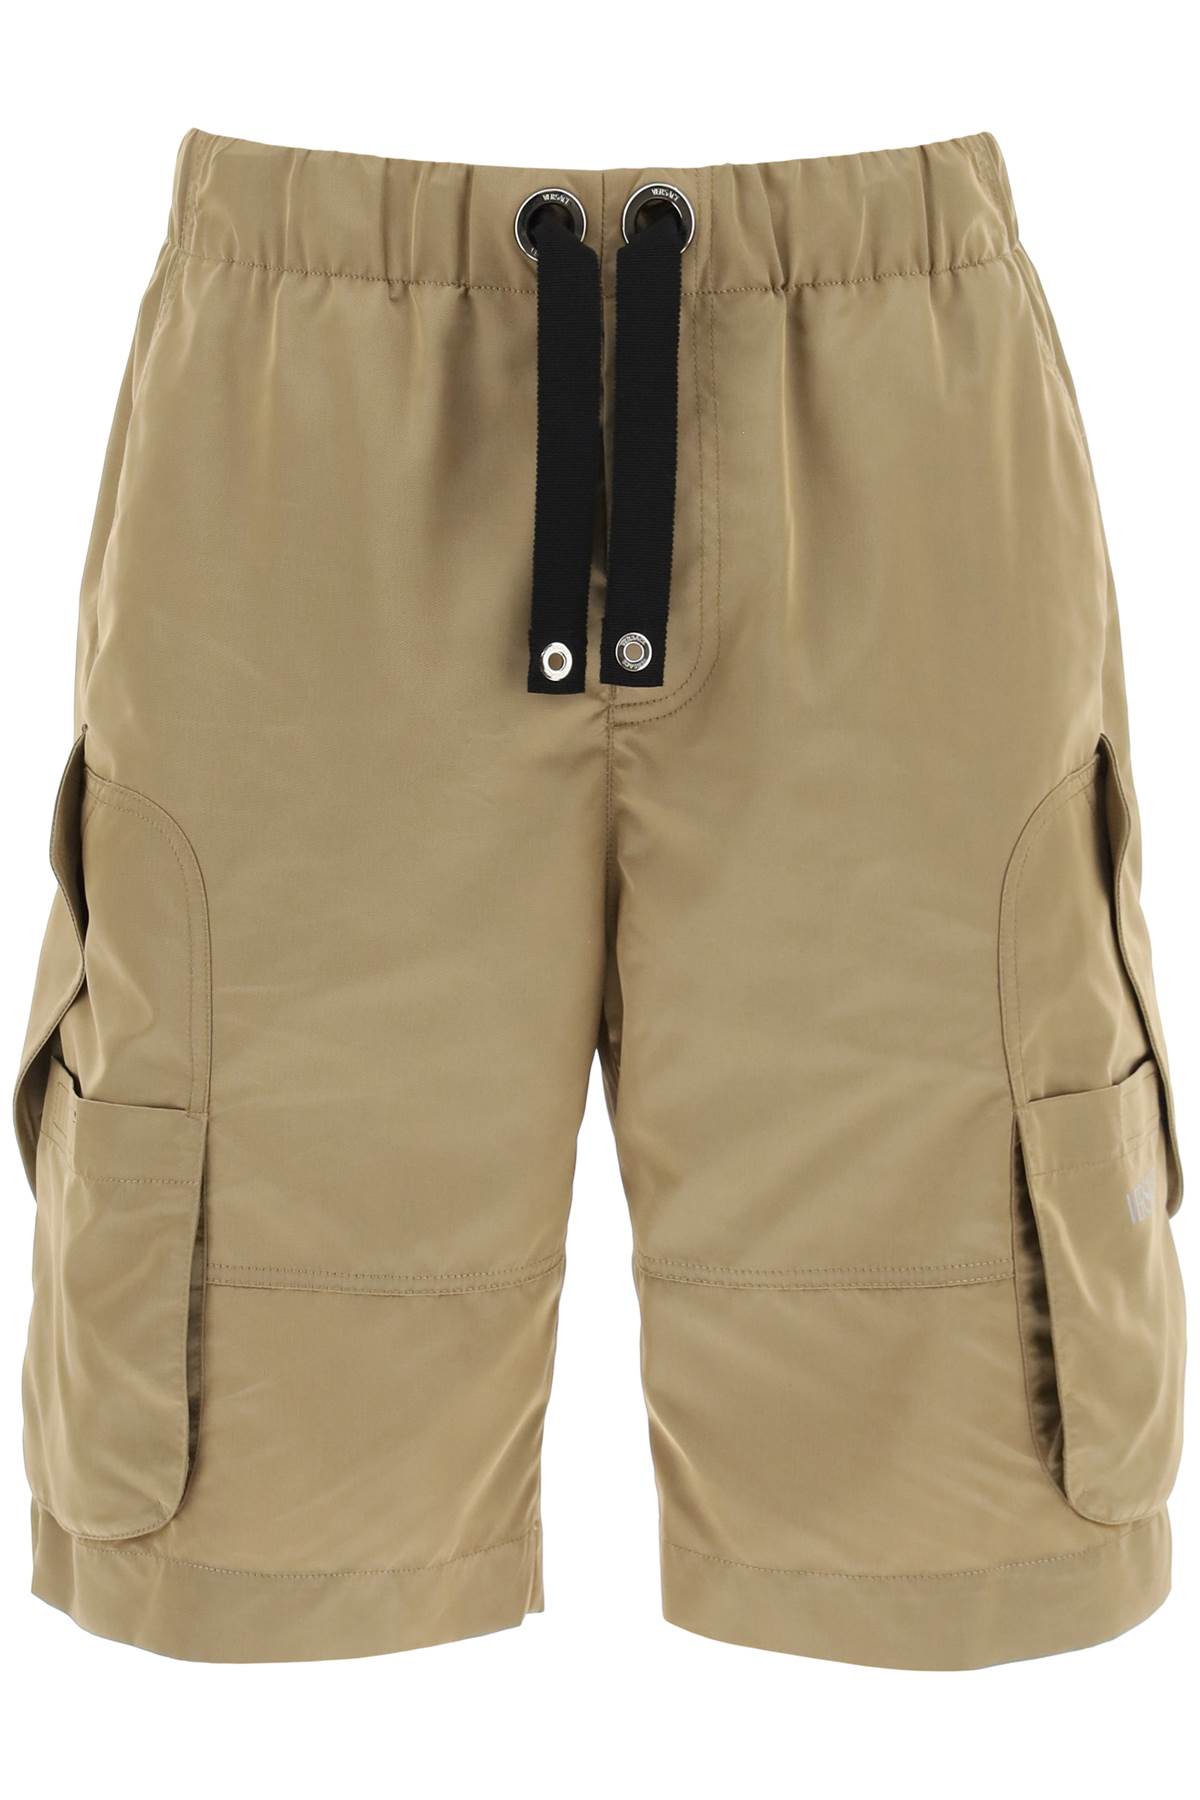 VERSACE Oversized Nylon Cargo Shorts for Men in Beige for SS23